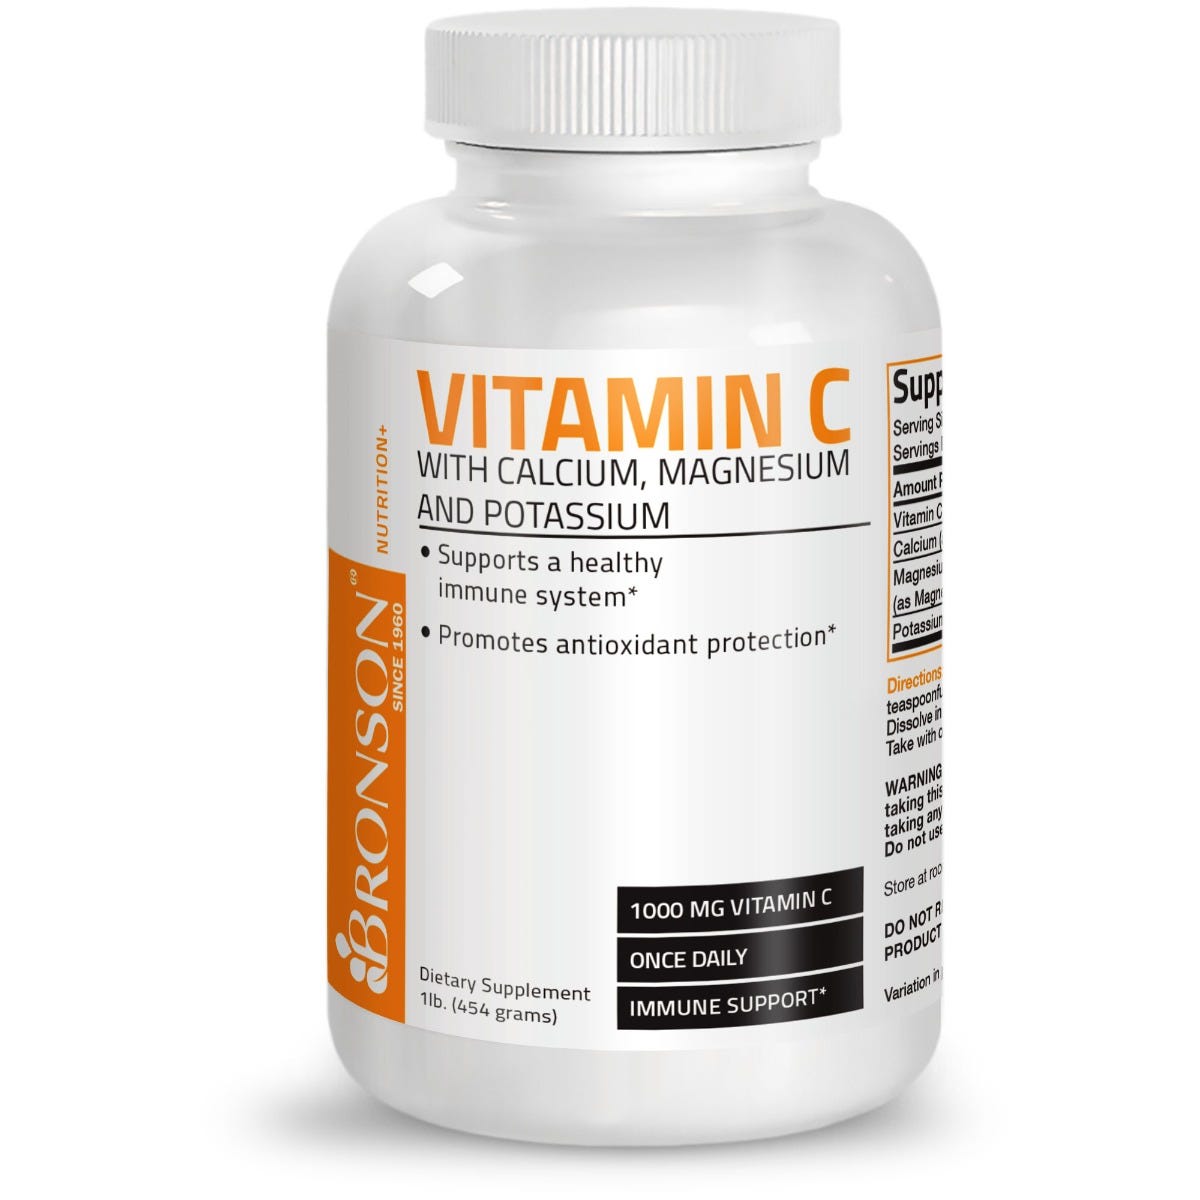 Vitamin C Powder with Calcium, Magnesium, Potassium - 1 lb (454g) view 1 of 4